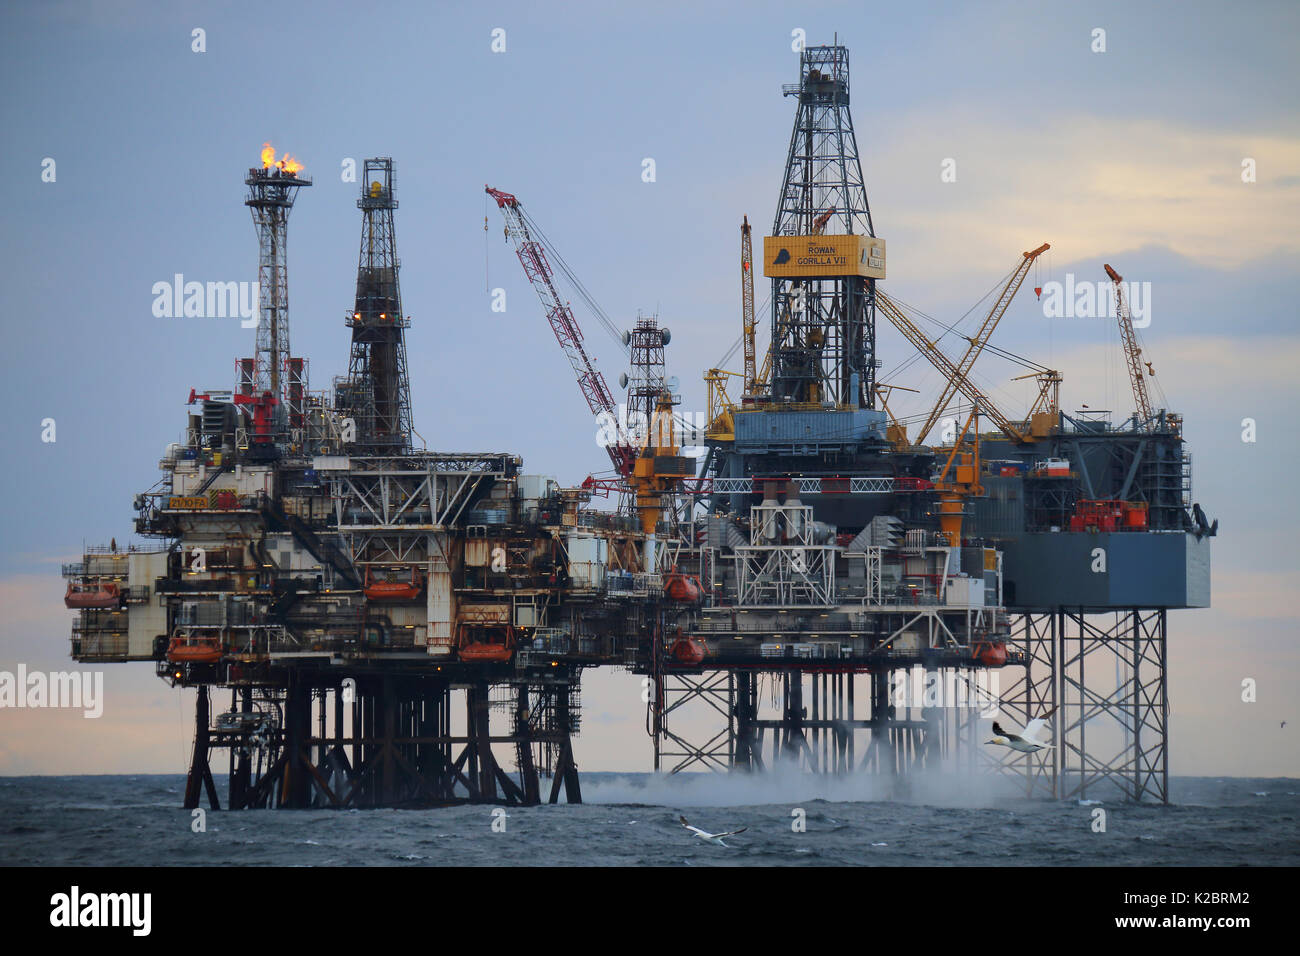 Les plates-formes de production dans les années 40' oilfield, Mer du Nord, octobre 2014. Tous les non-usages de rédaction doivent être effacés individuellement. Banque D'Images